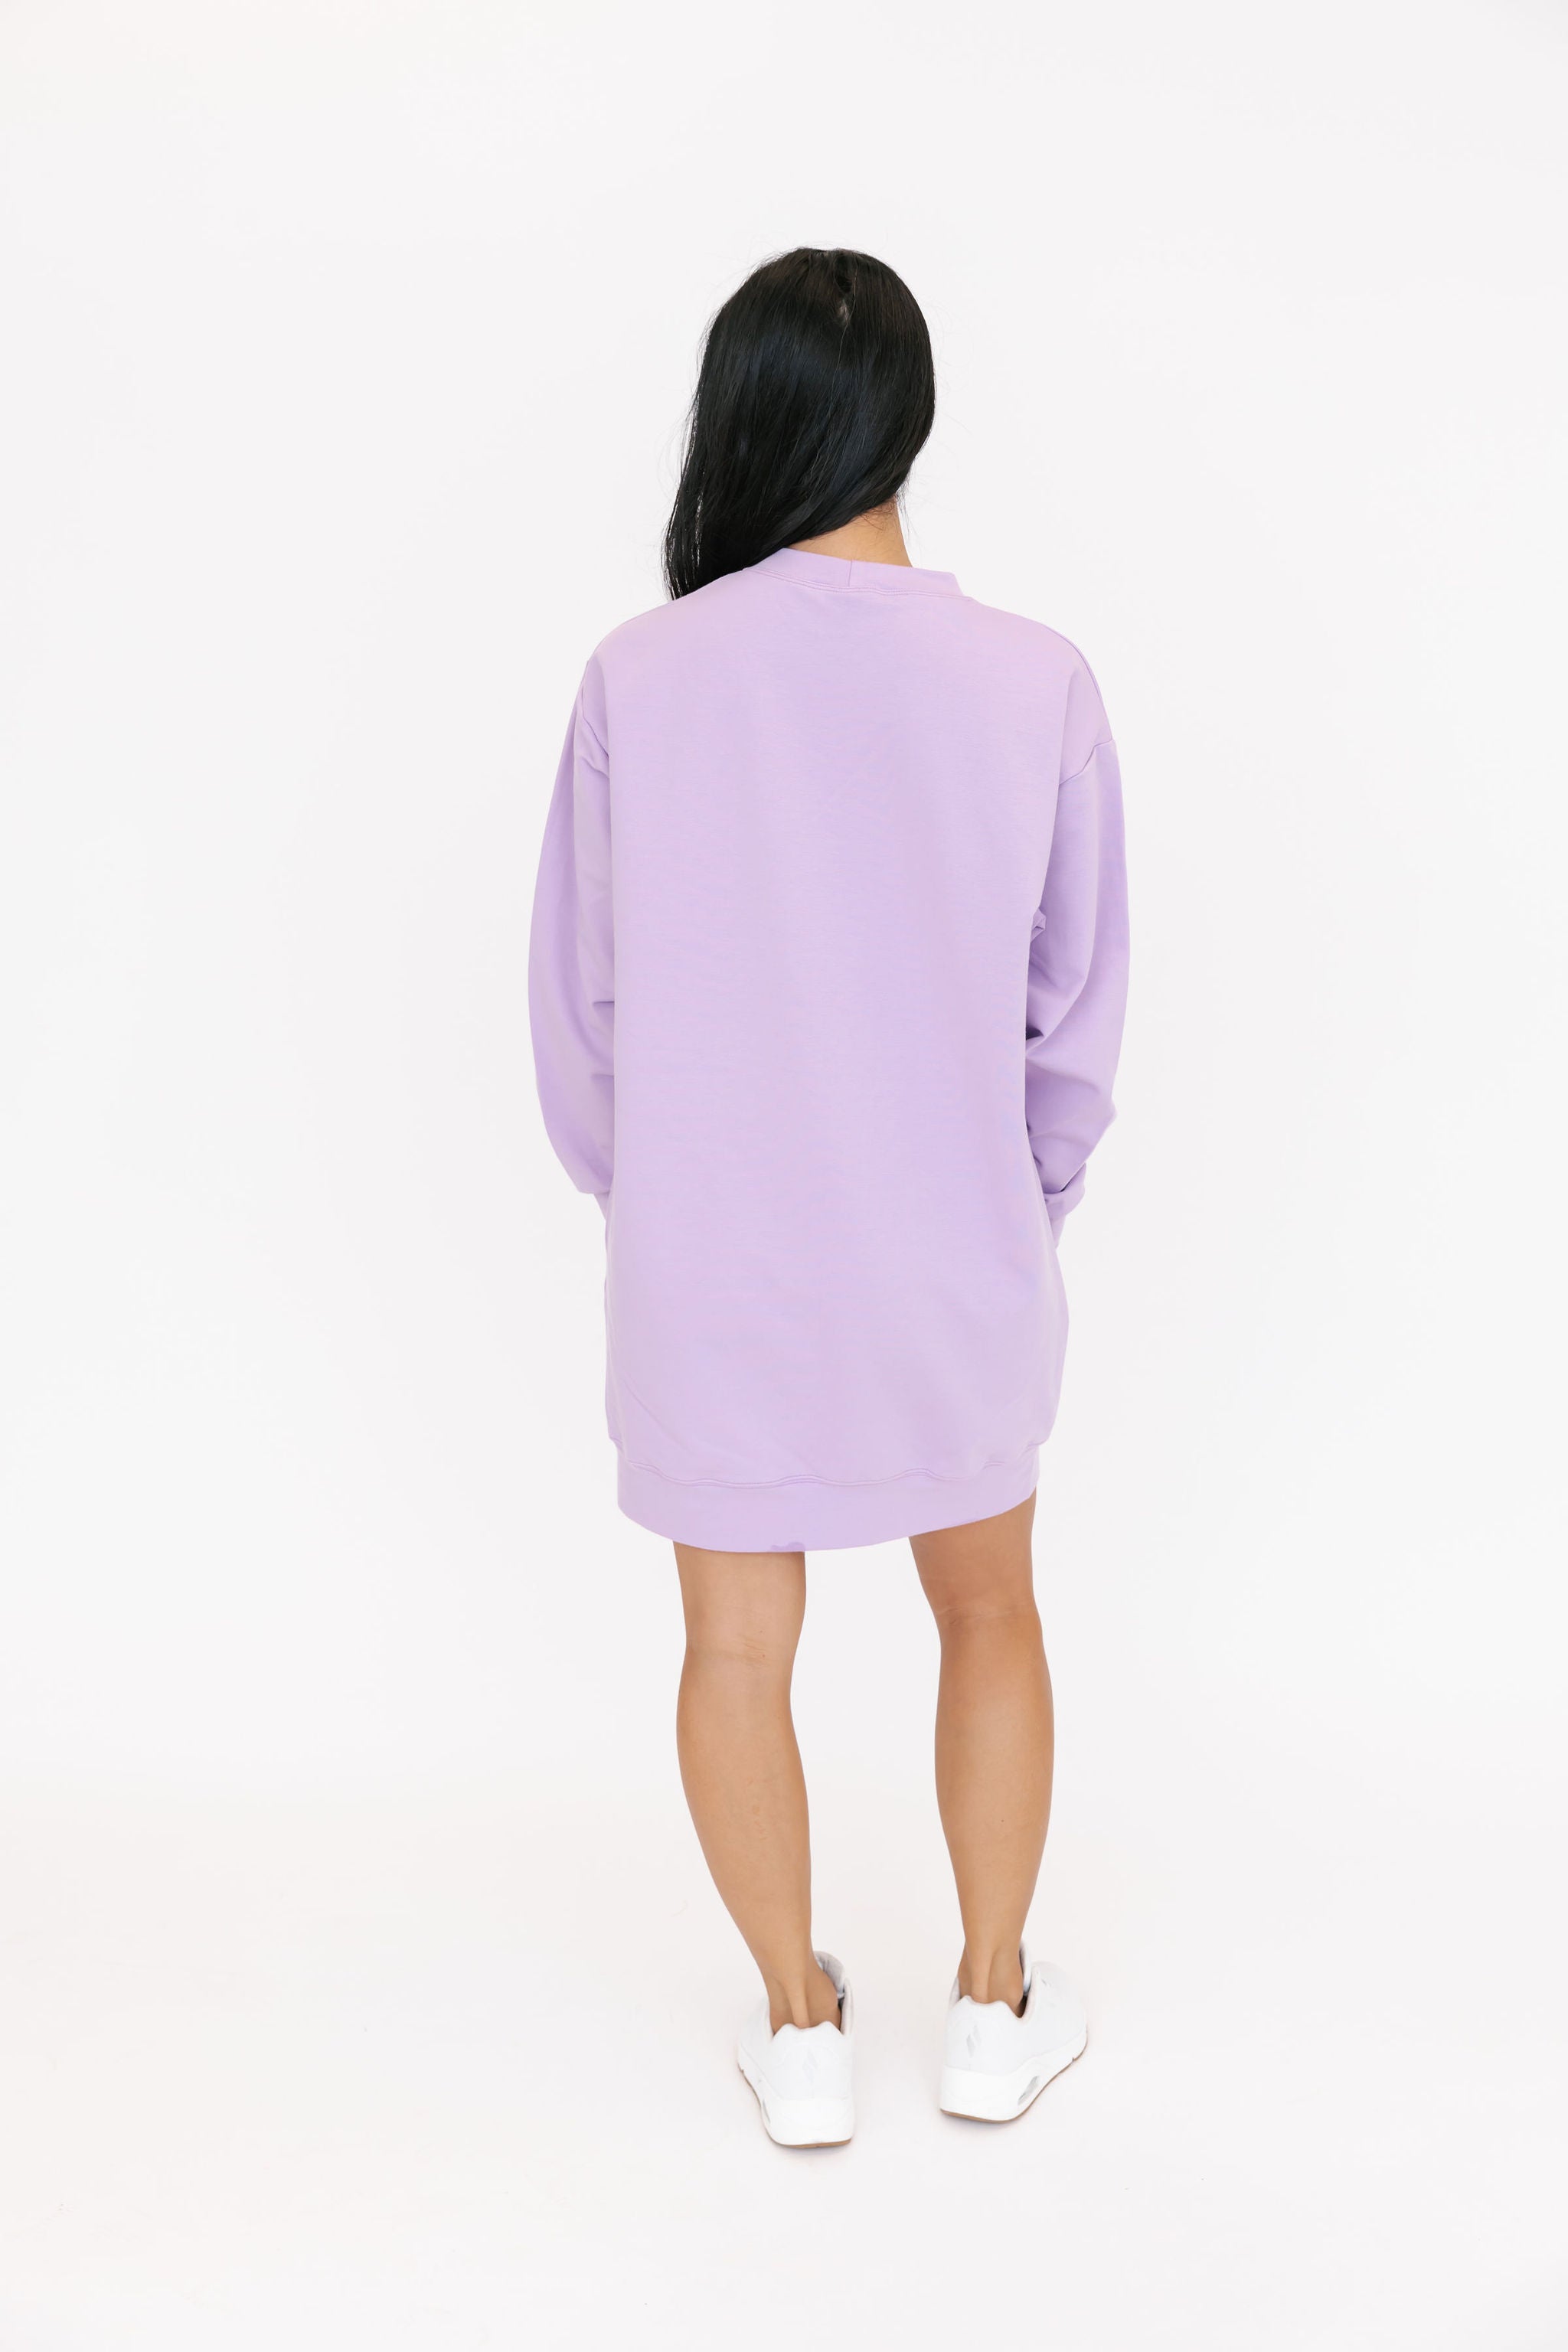 Prospect Mini Dress in Lovely Lavender